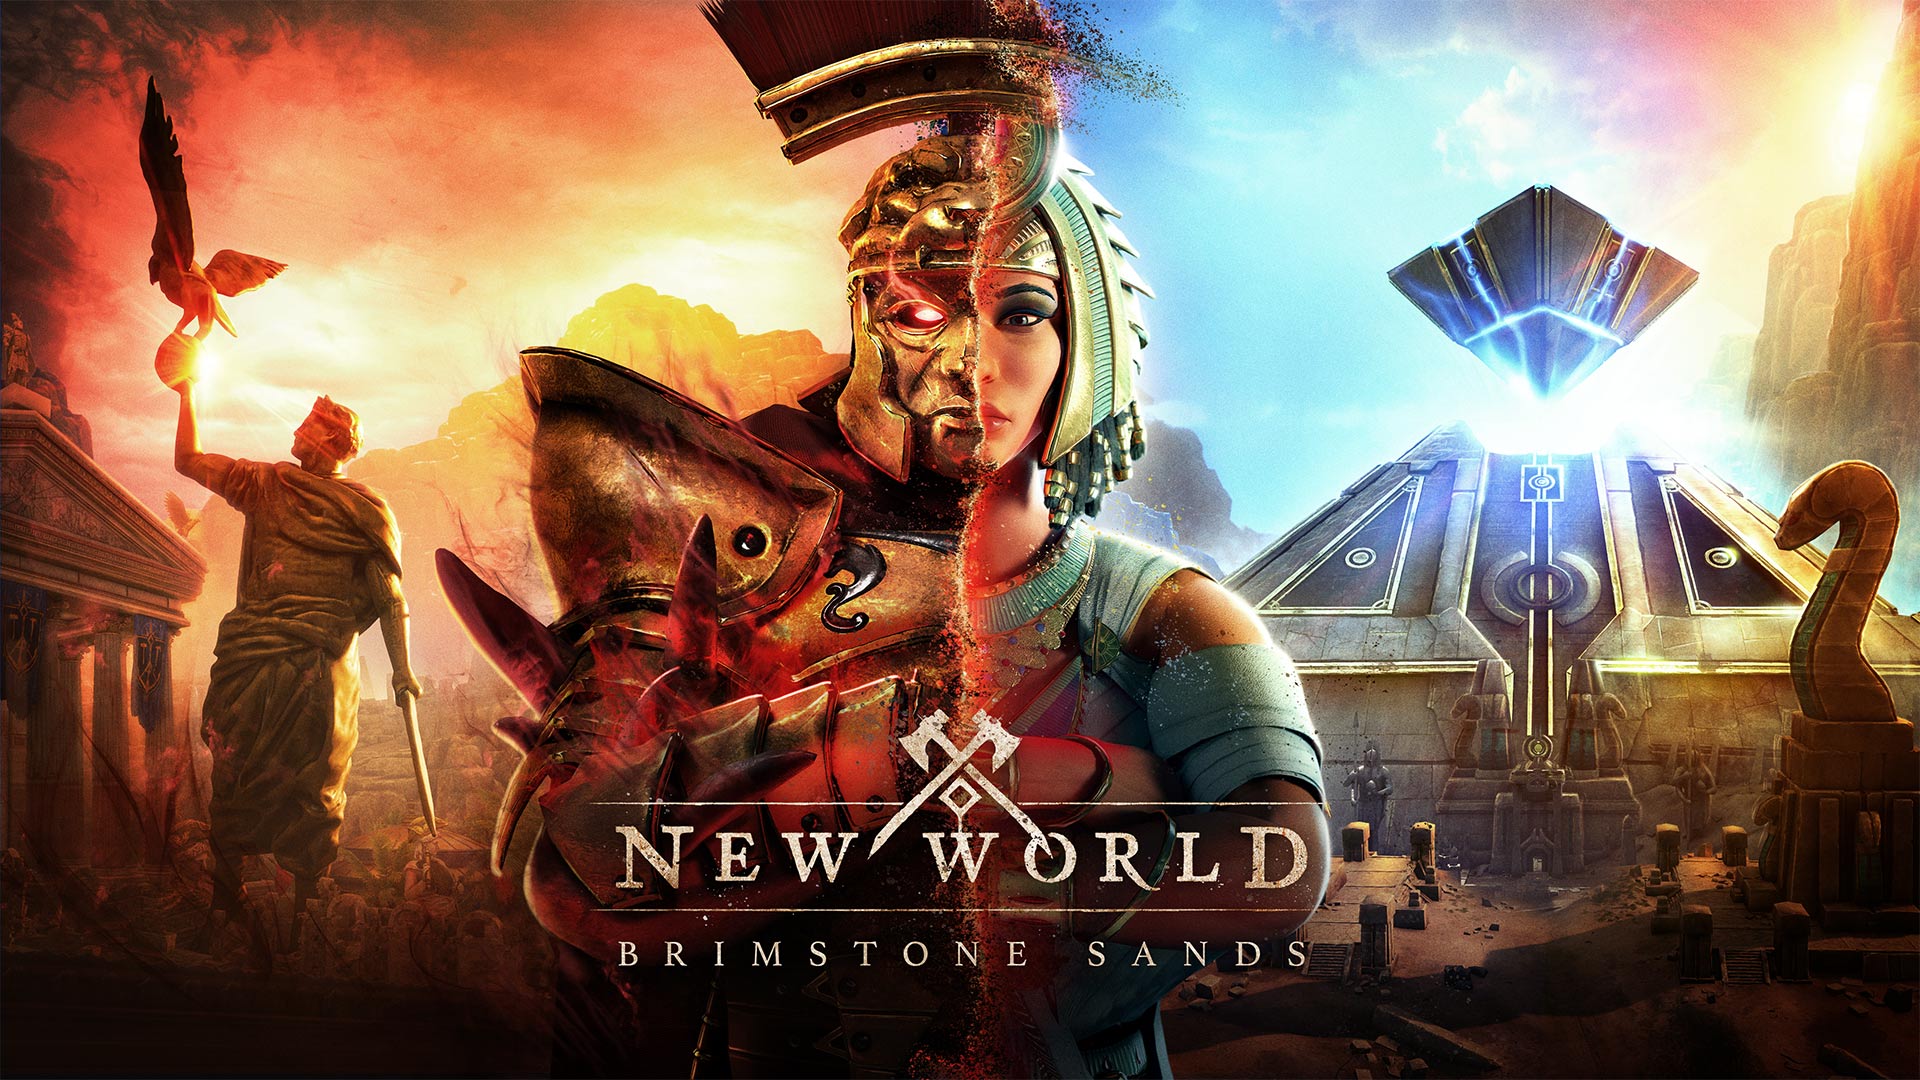 New World bereitet sich auf den Brimstone Sands Release vor. Quelle: Amazon Games